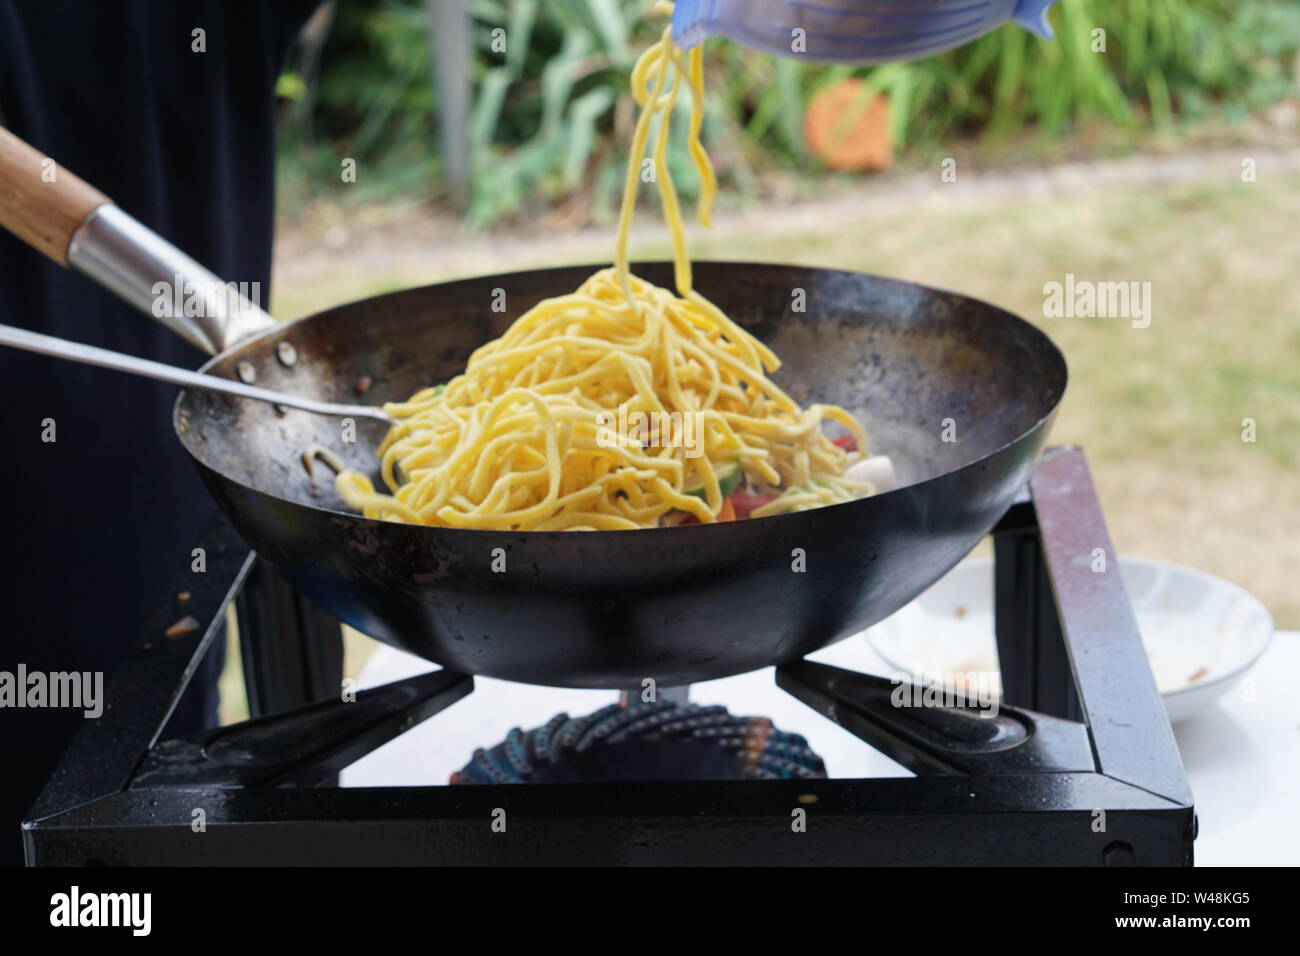 La cuisine asiatique dans un wok casserole Banque D'Images